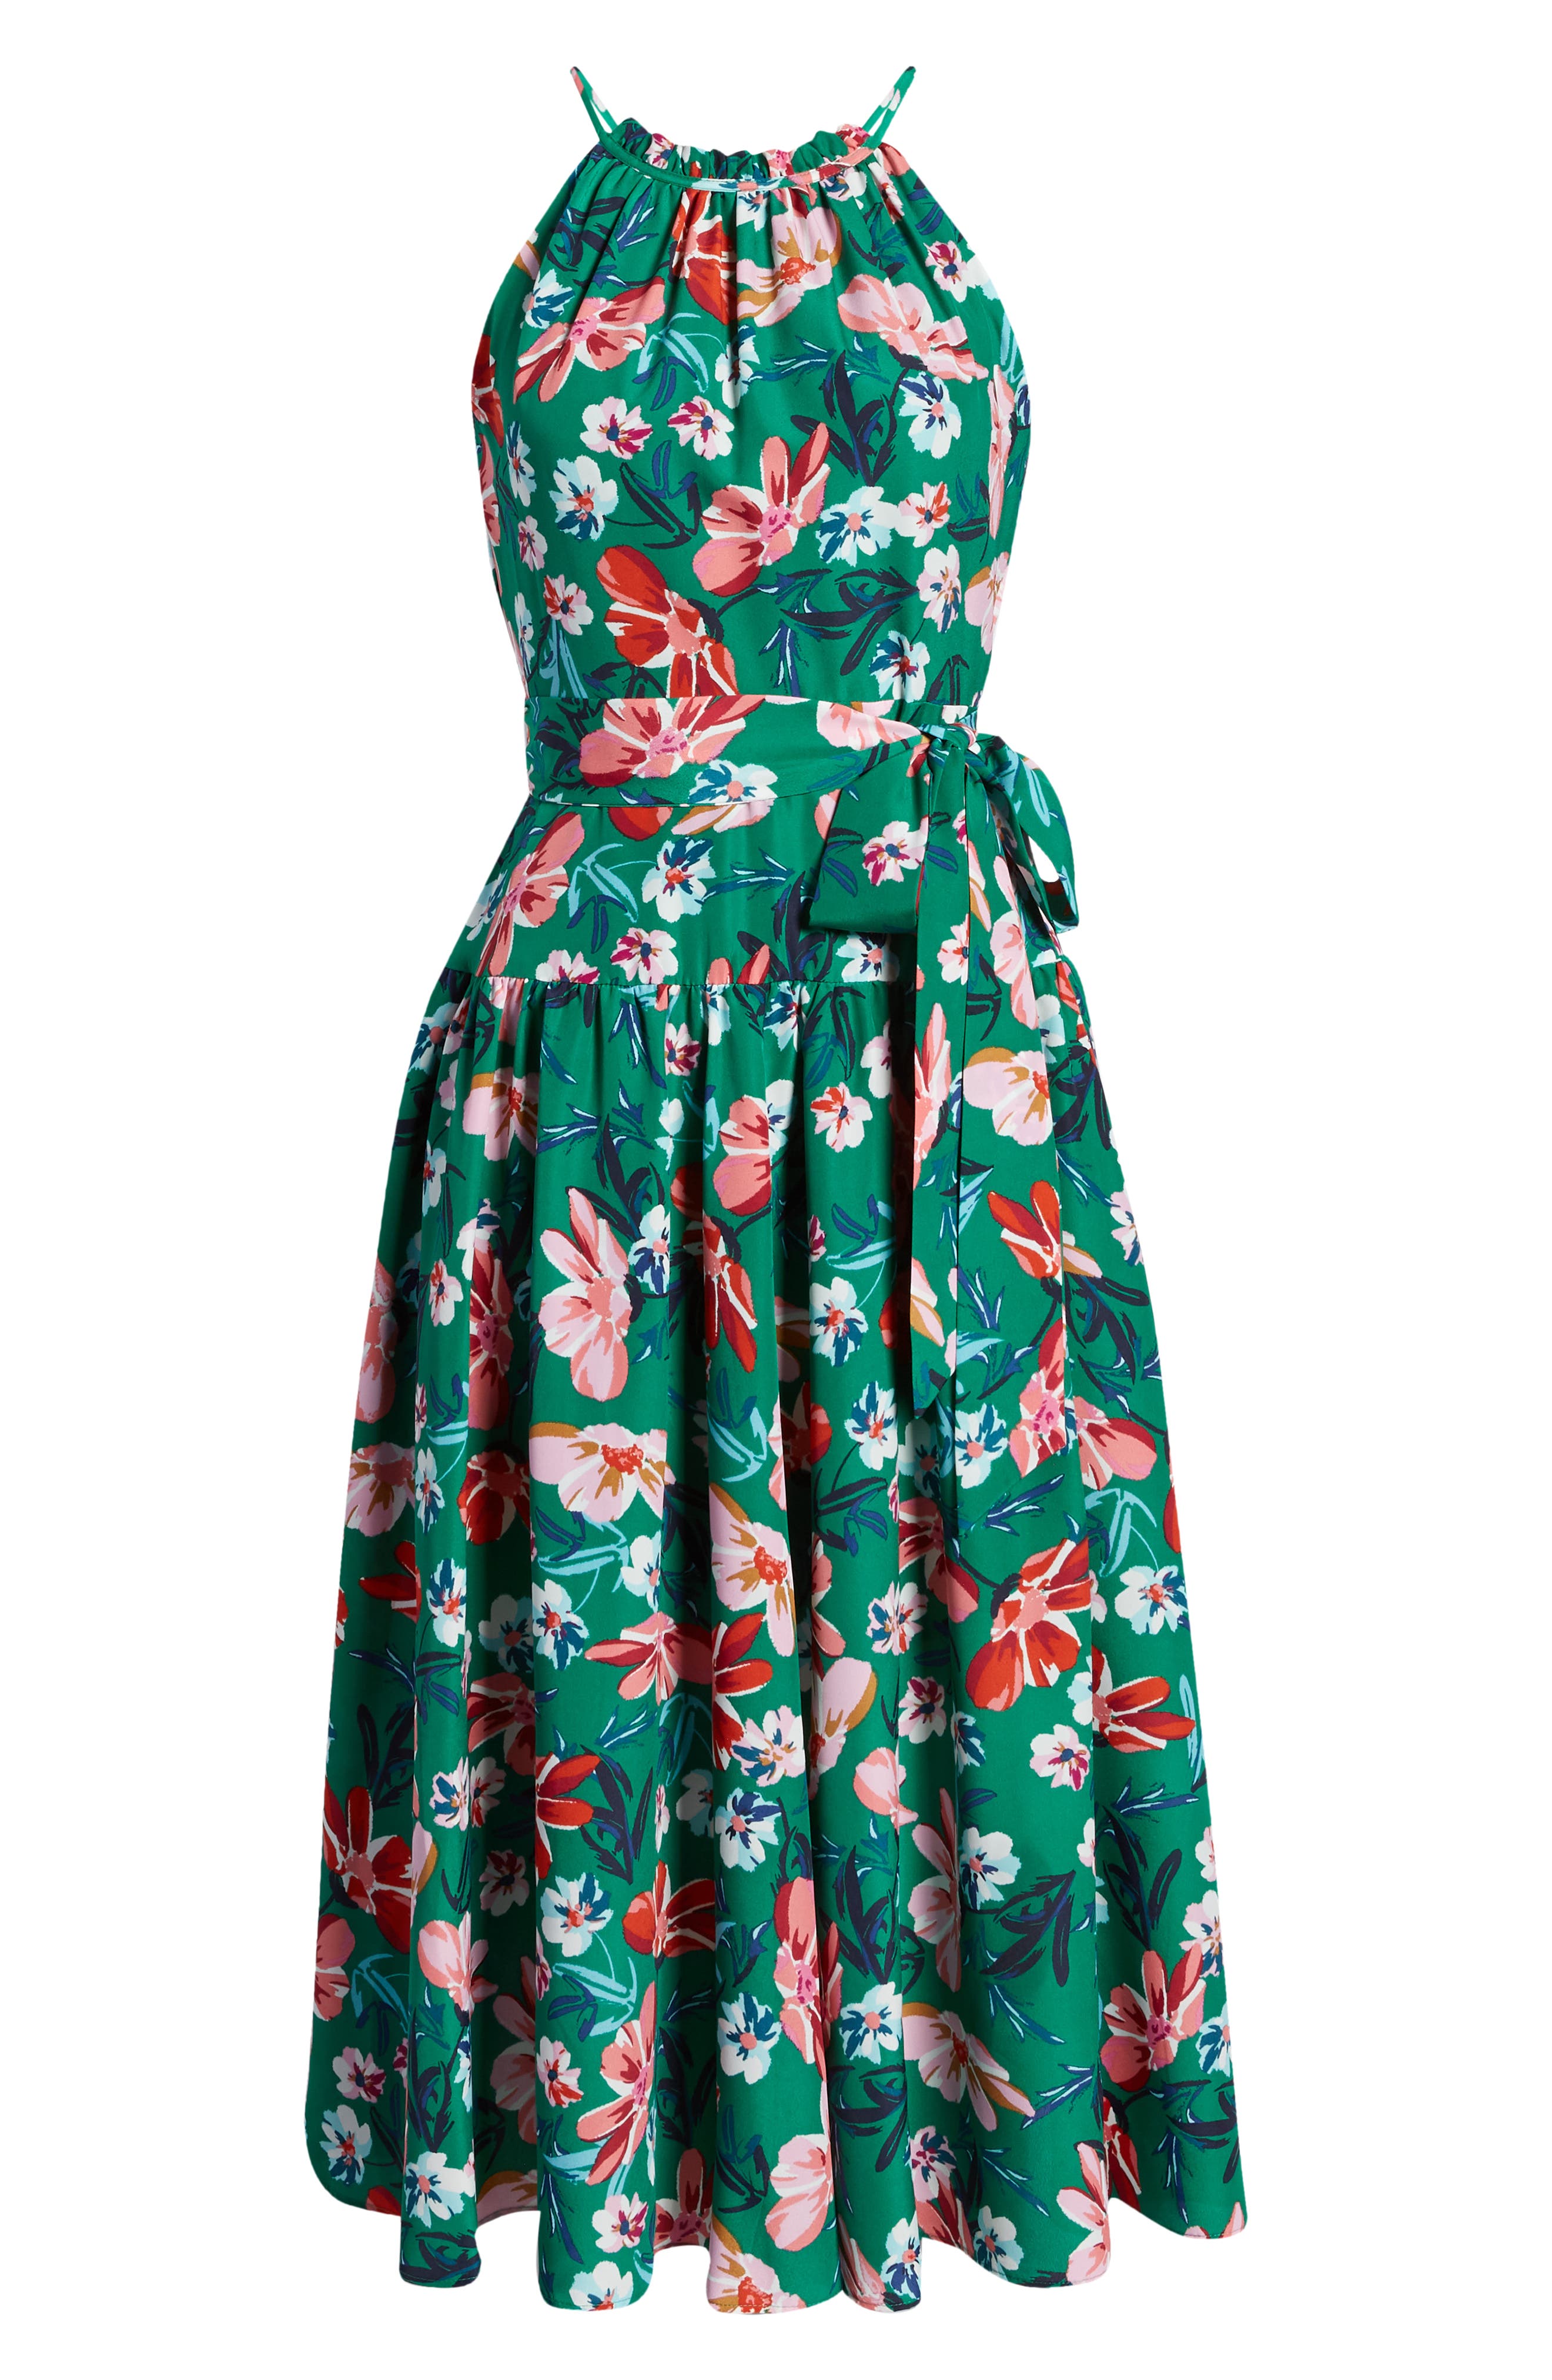 Eliza J Green Floral Print Halter Neck Belted Dress Size 12 